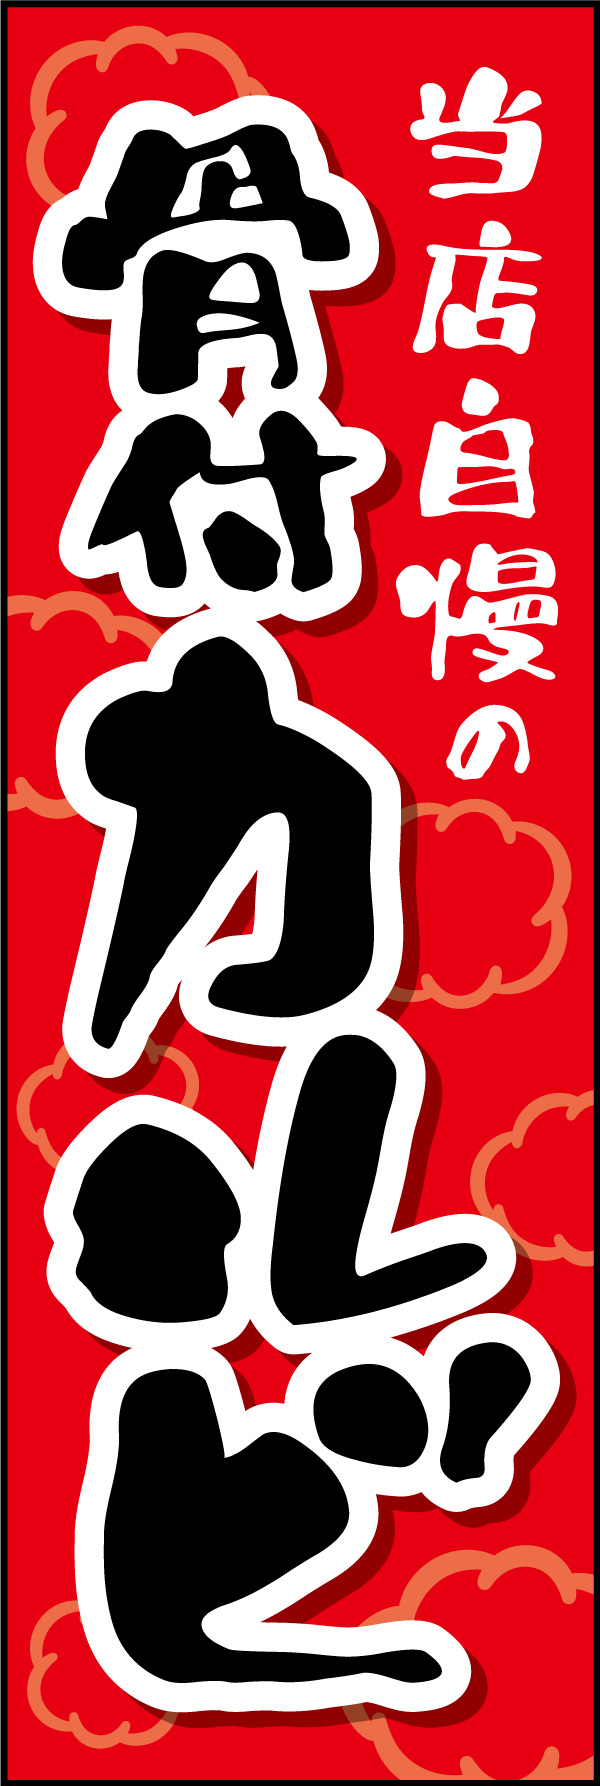 骨付きカルビ 01 「骨付きカルビ 」の幟です。がっつり食べれて美味しい焼肉屋をイメージし、力強い書体を使用してデザインしました。(Y.M)